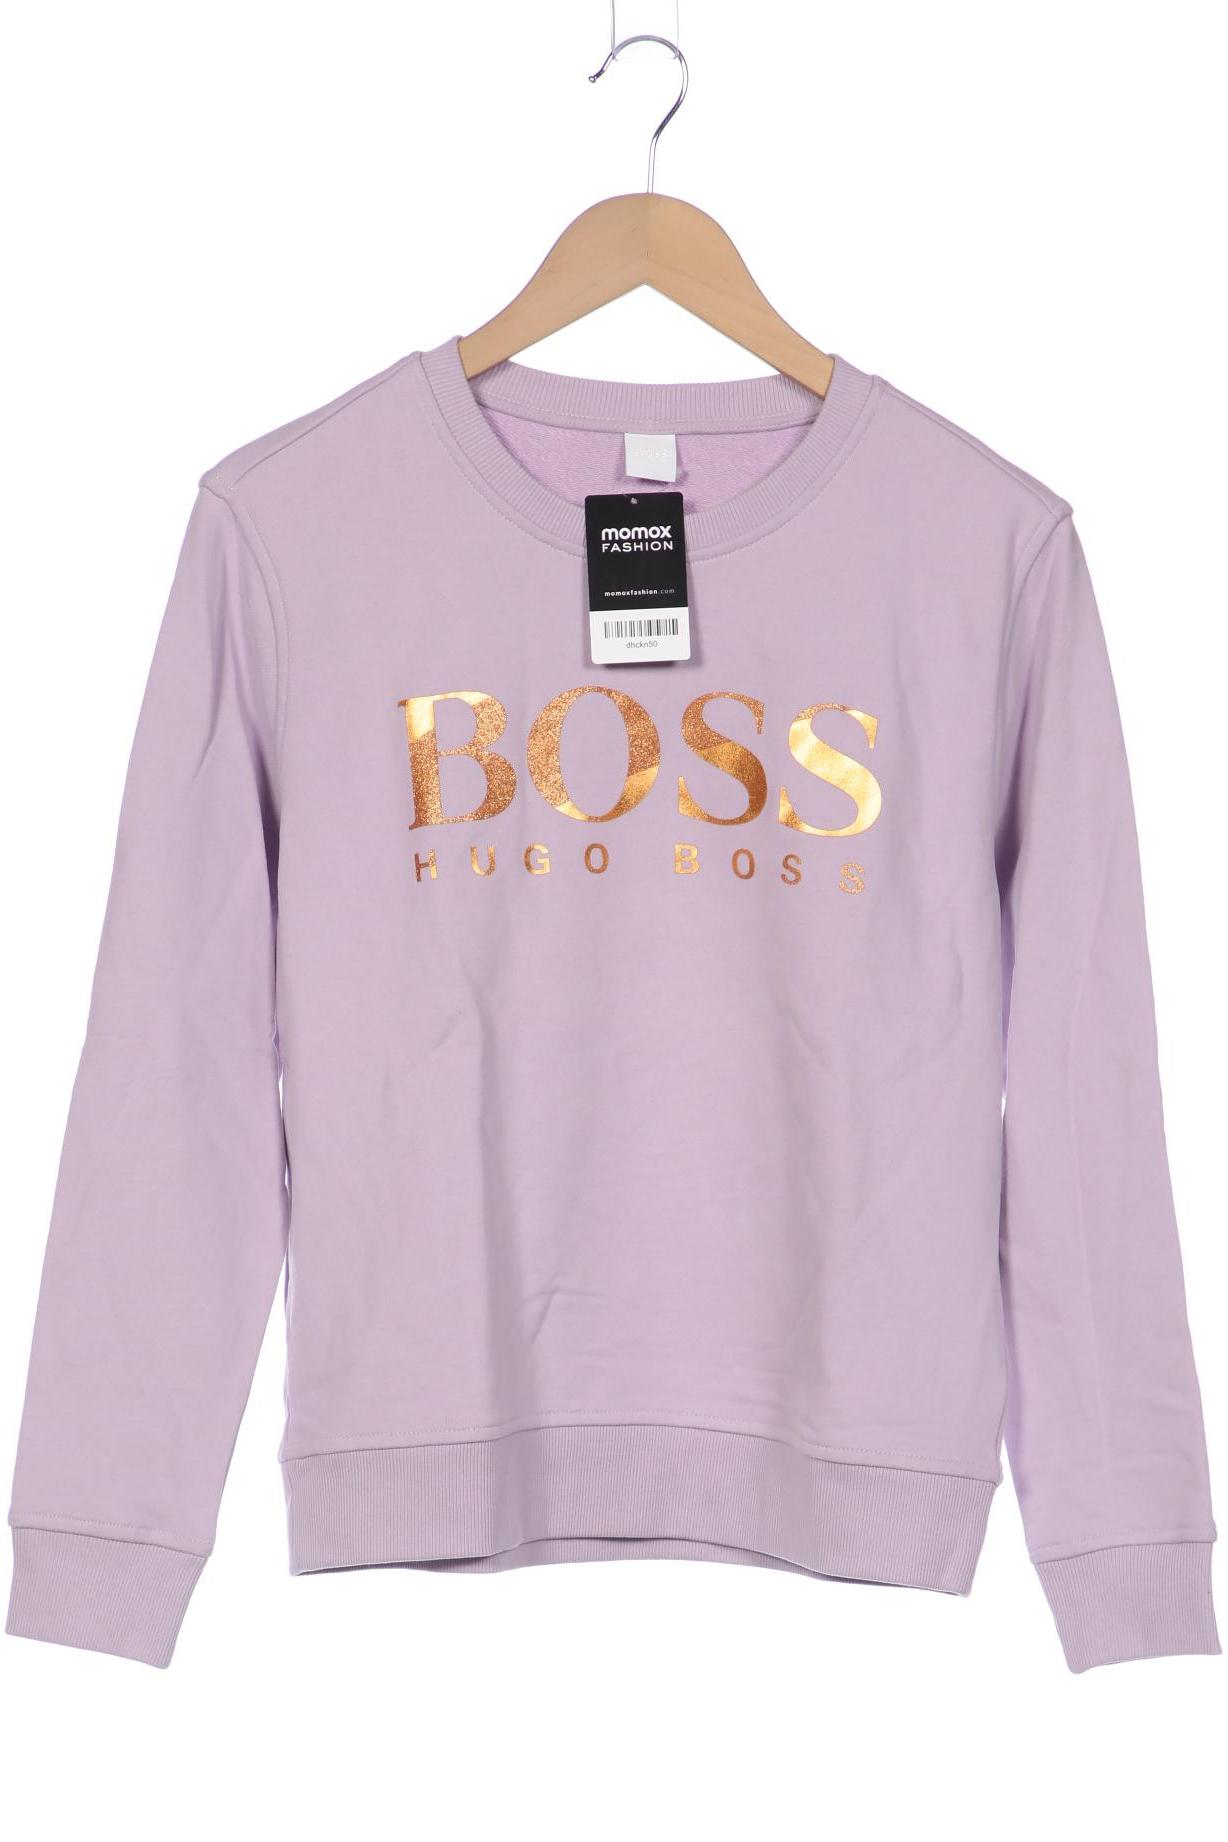 BOSS by Hugo Boss Damen Sweatshirt, flieder von BOSS by Hugo Boss